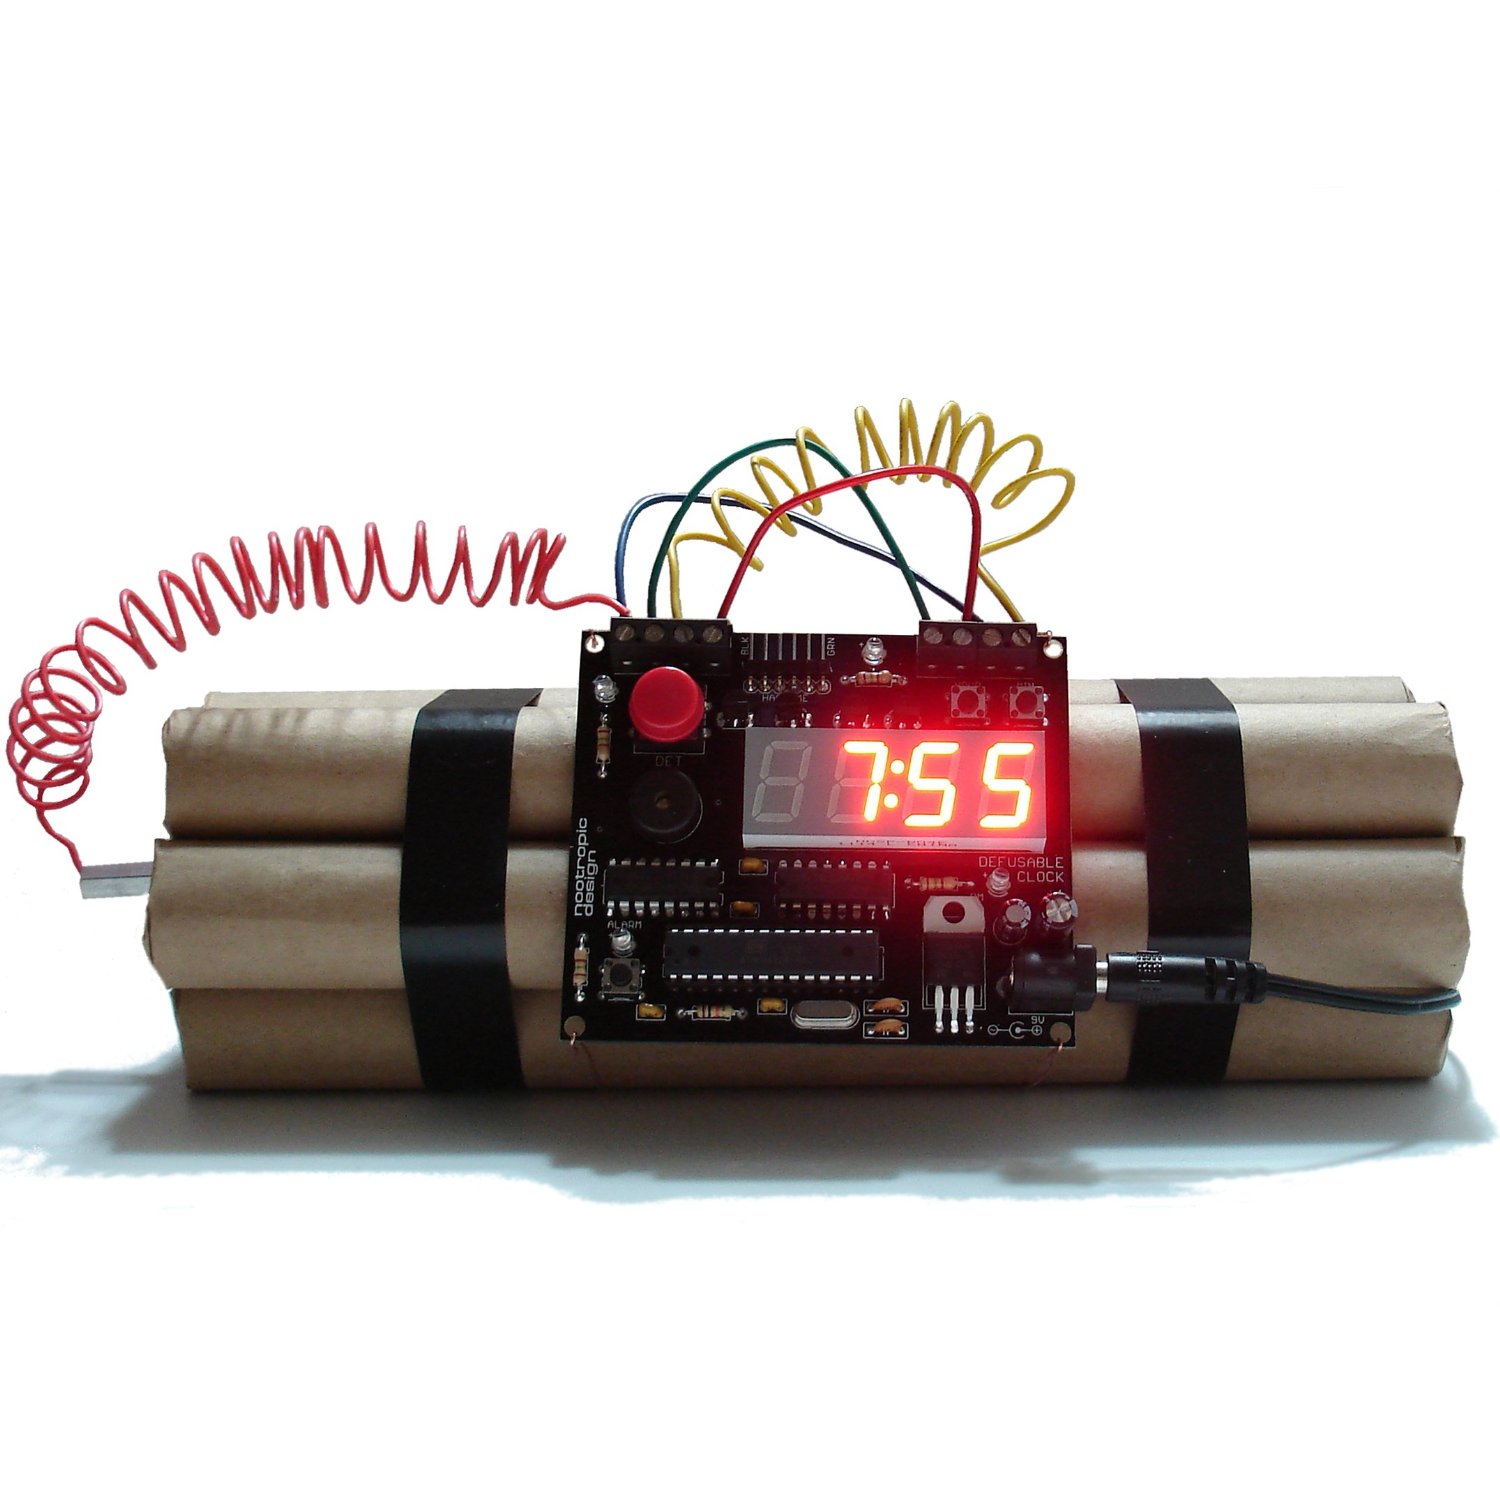 Defuse a bomb Wecker – Entschärfbarer Wecker mit Countdown